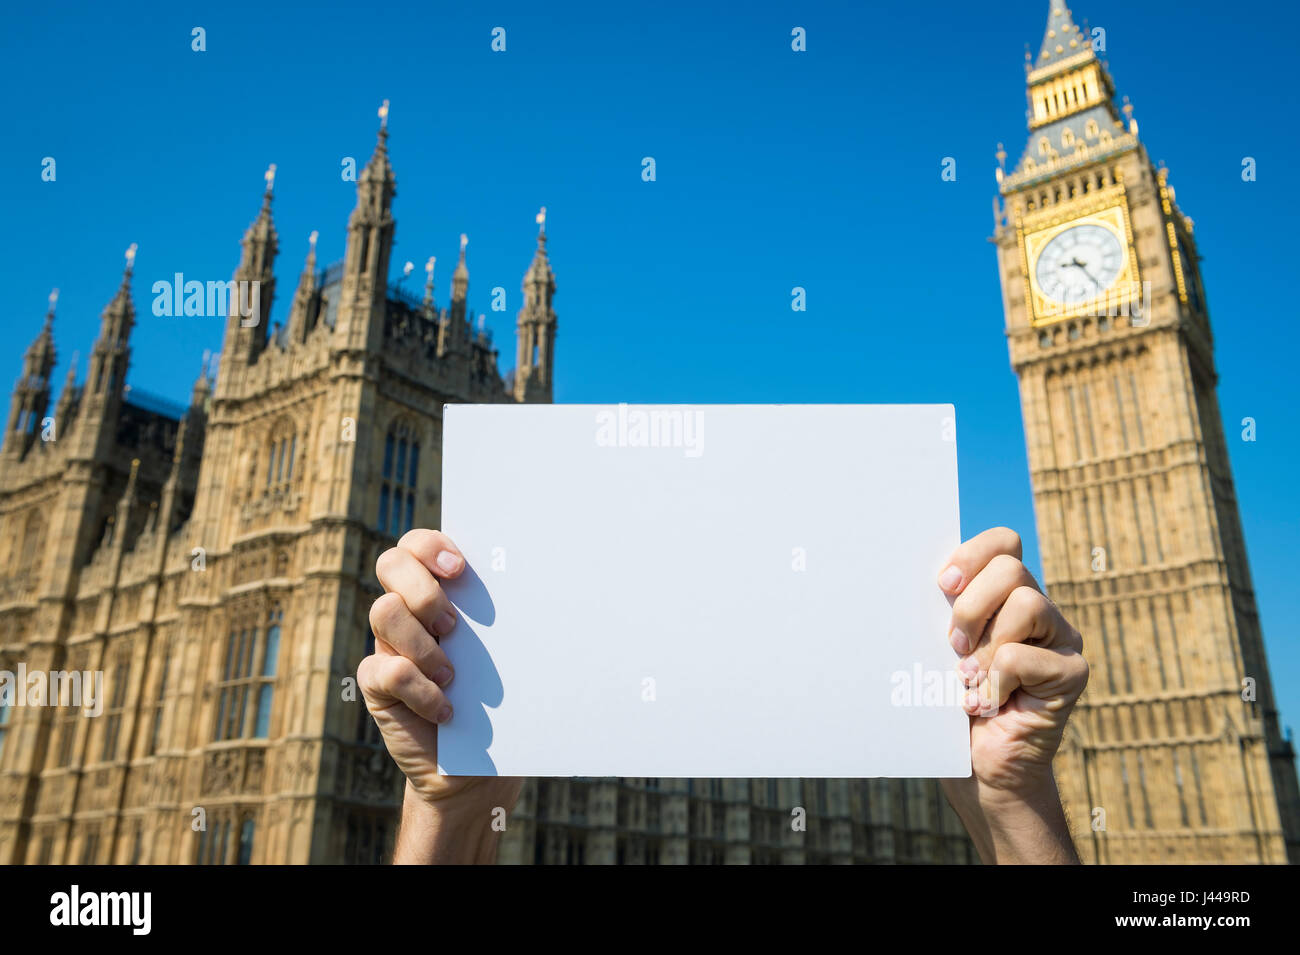 Mani segno vuota nella parte anteriore del case del Parlamento presso il Palazzo di Westminster con il Big Ben in blu luminoso cielo a Londra in Inghilterra Foto Stock